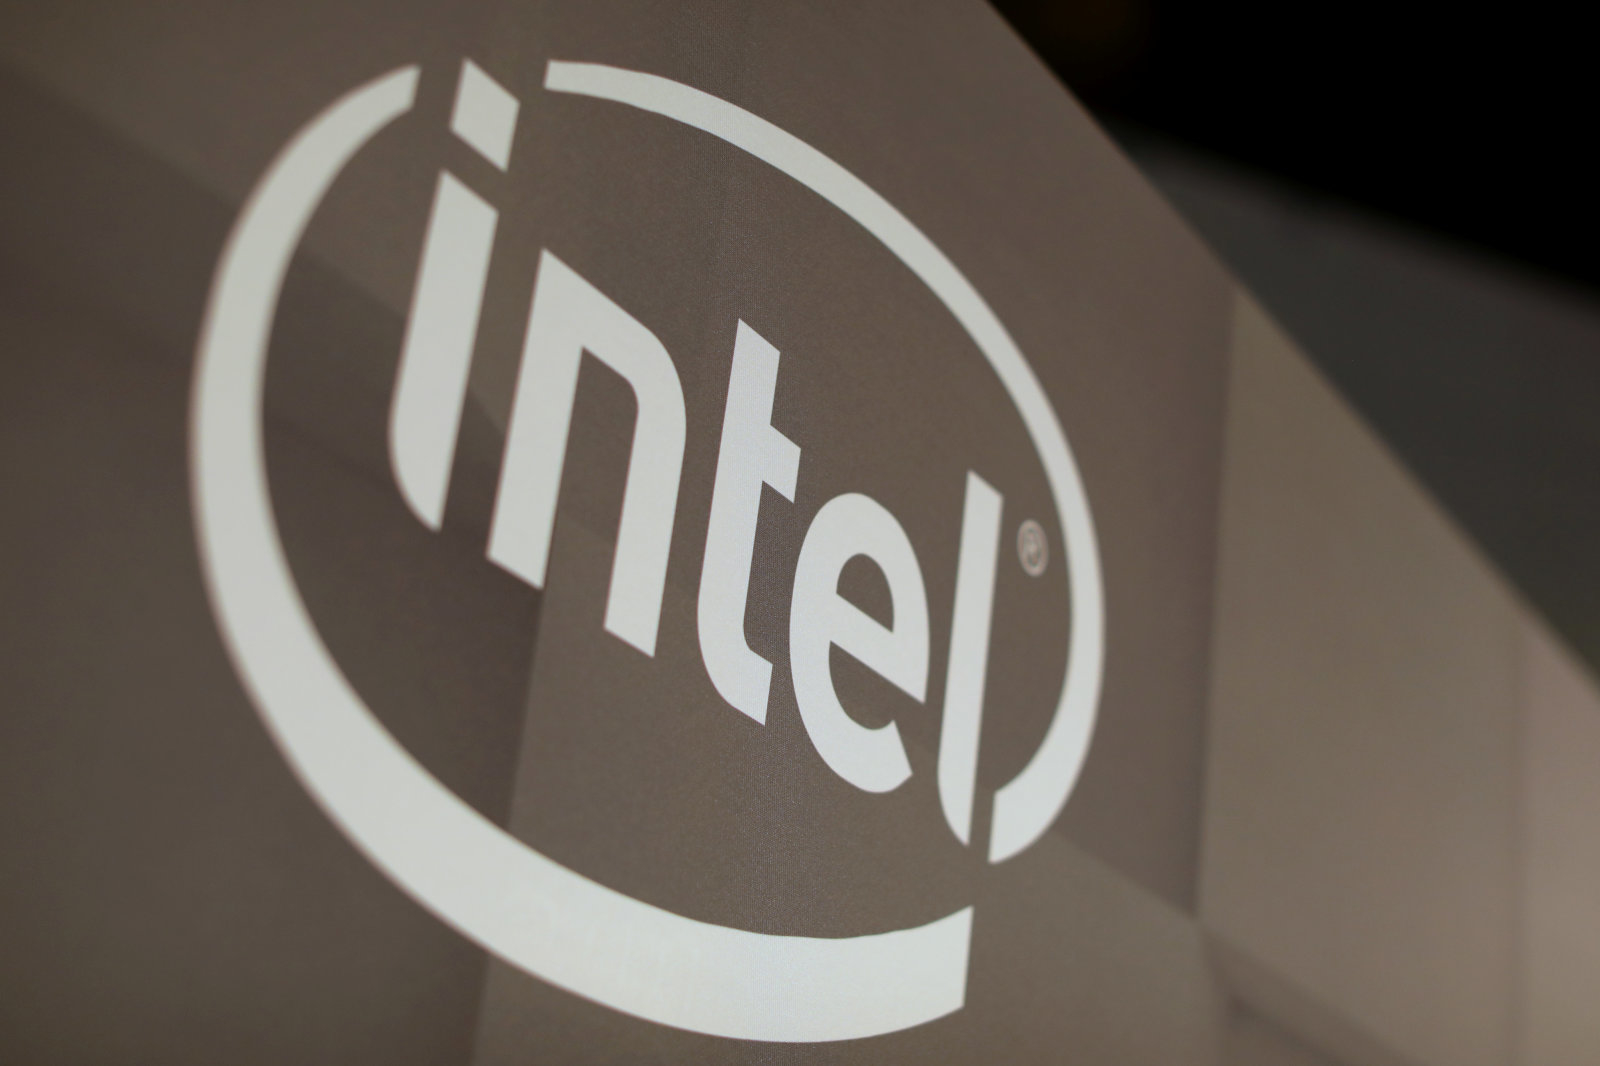 Intel cho biết họ đã bắt đầu bán trở lại các công nghệ cho Huawei